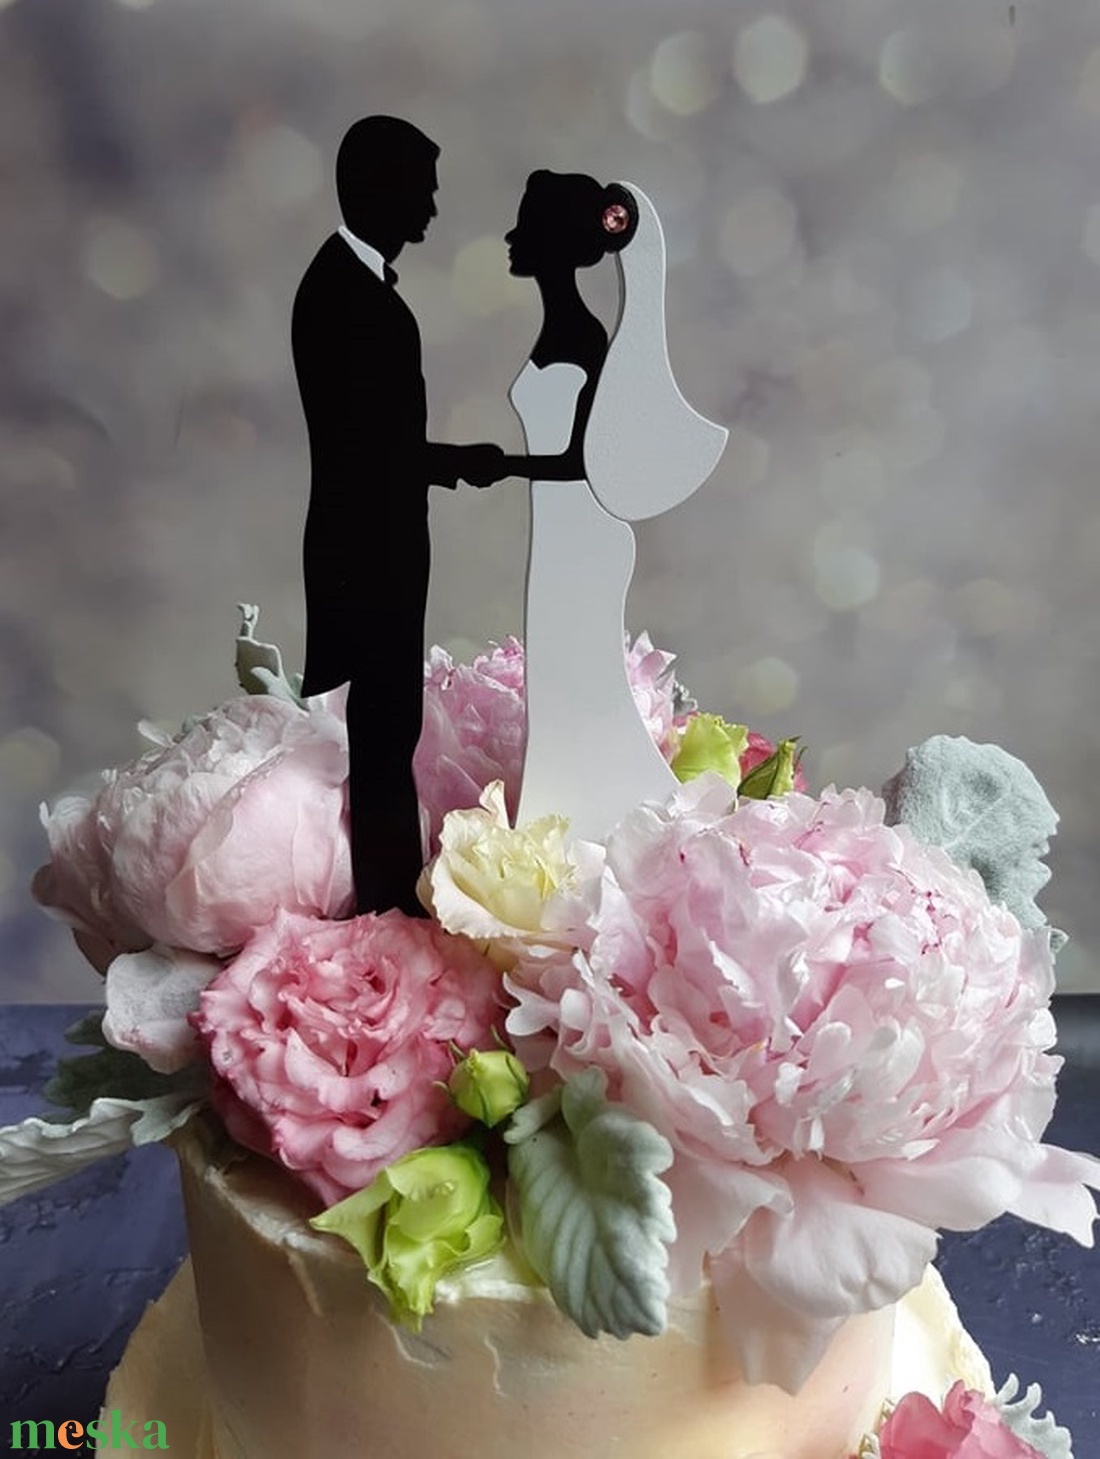 Nászpár esküvői tortadísz/csúcsdísz Menyasszony és vőlegény Esküvői dekoráció tortára  - esküvő - dekoráció - sütidísz - Meska.hu